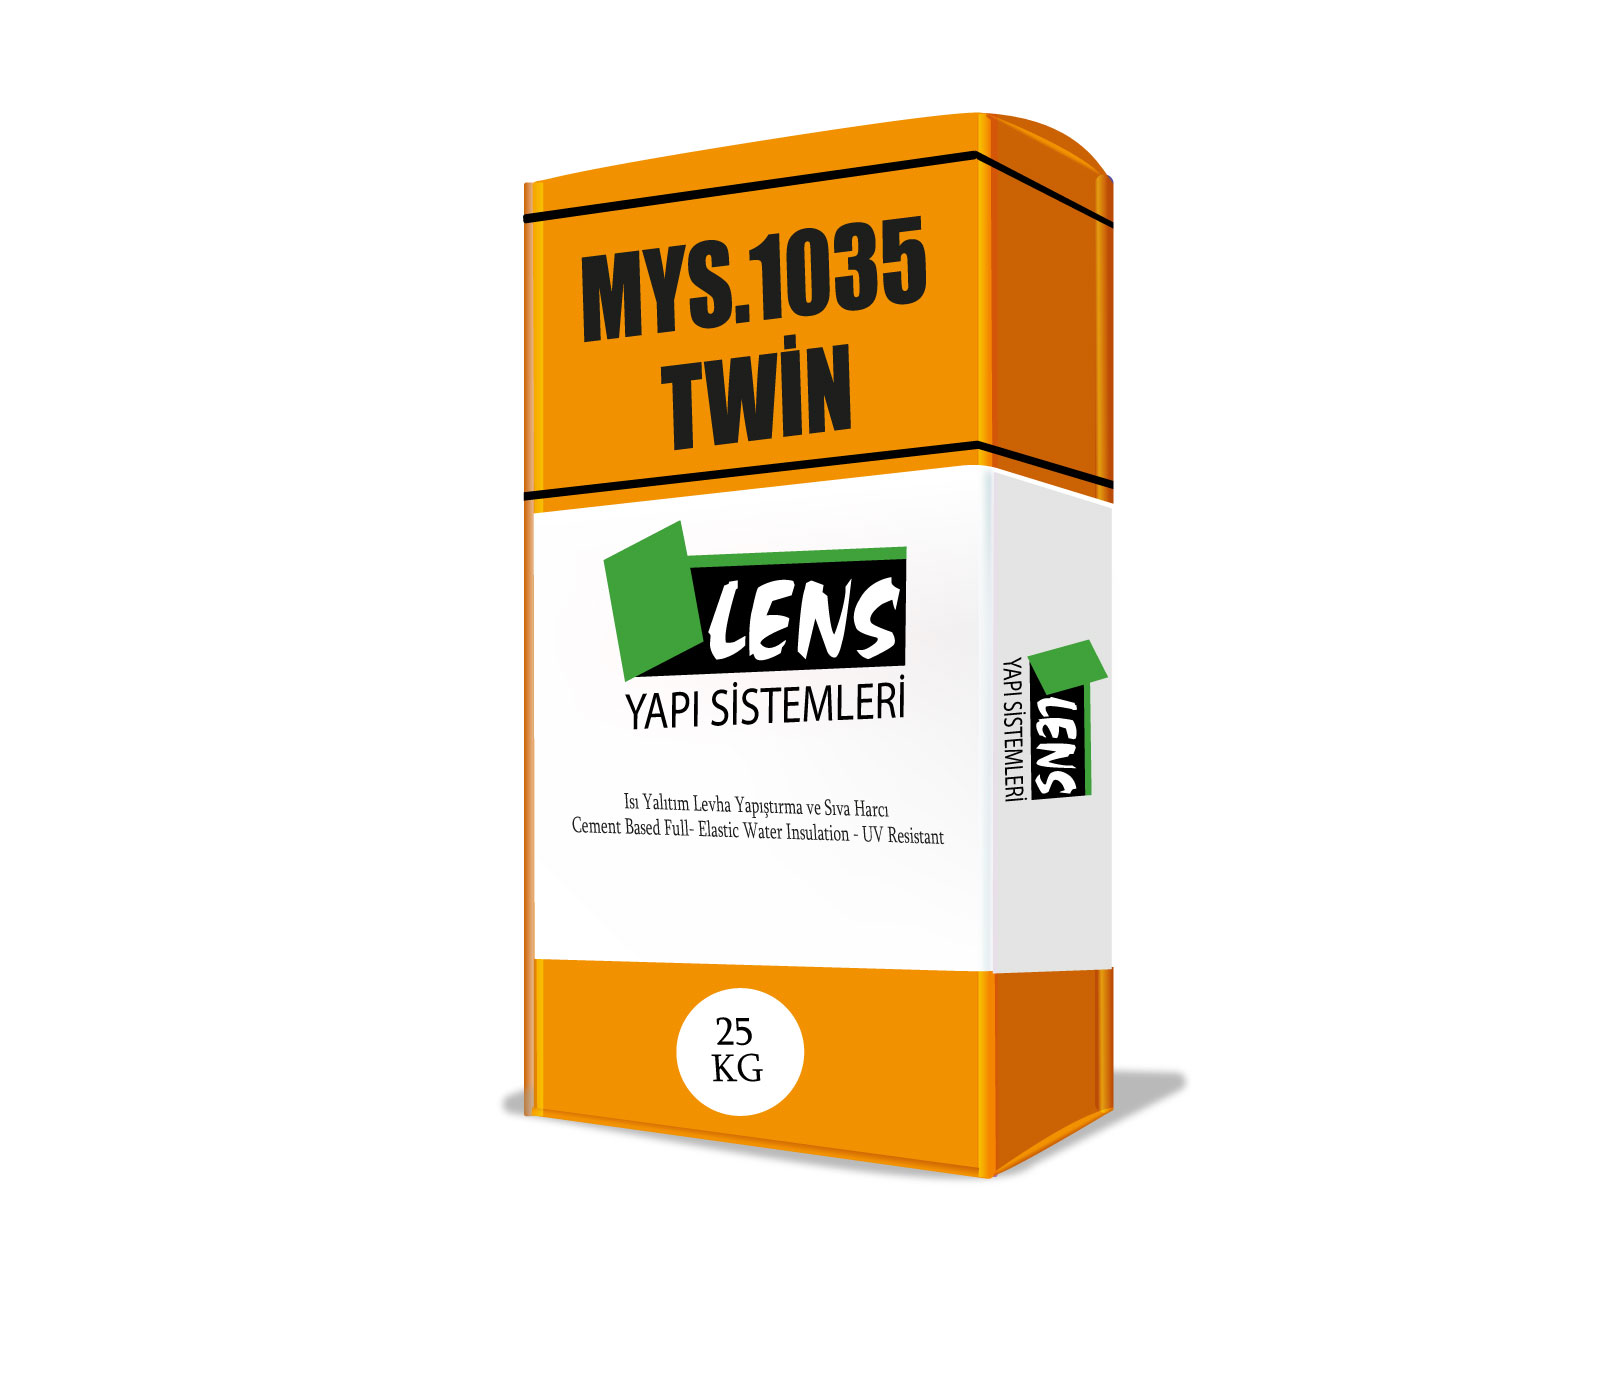 MYS.1035 Twin Mantolama Yapıştırıcısı ve Sıvası